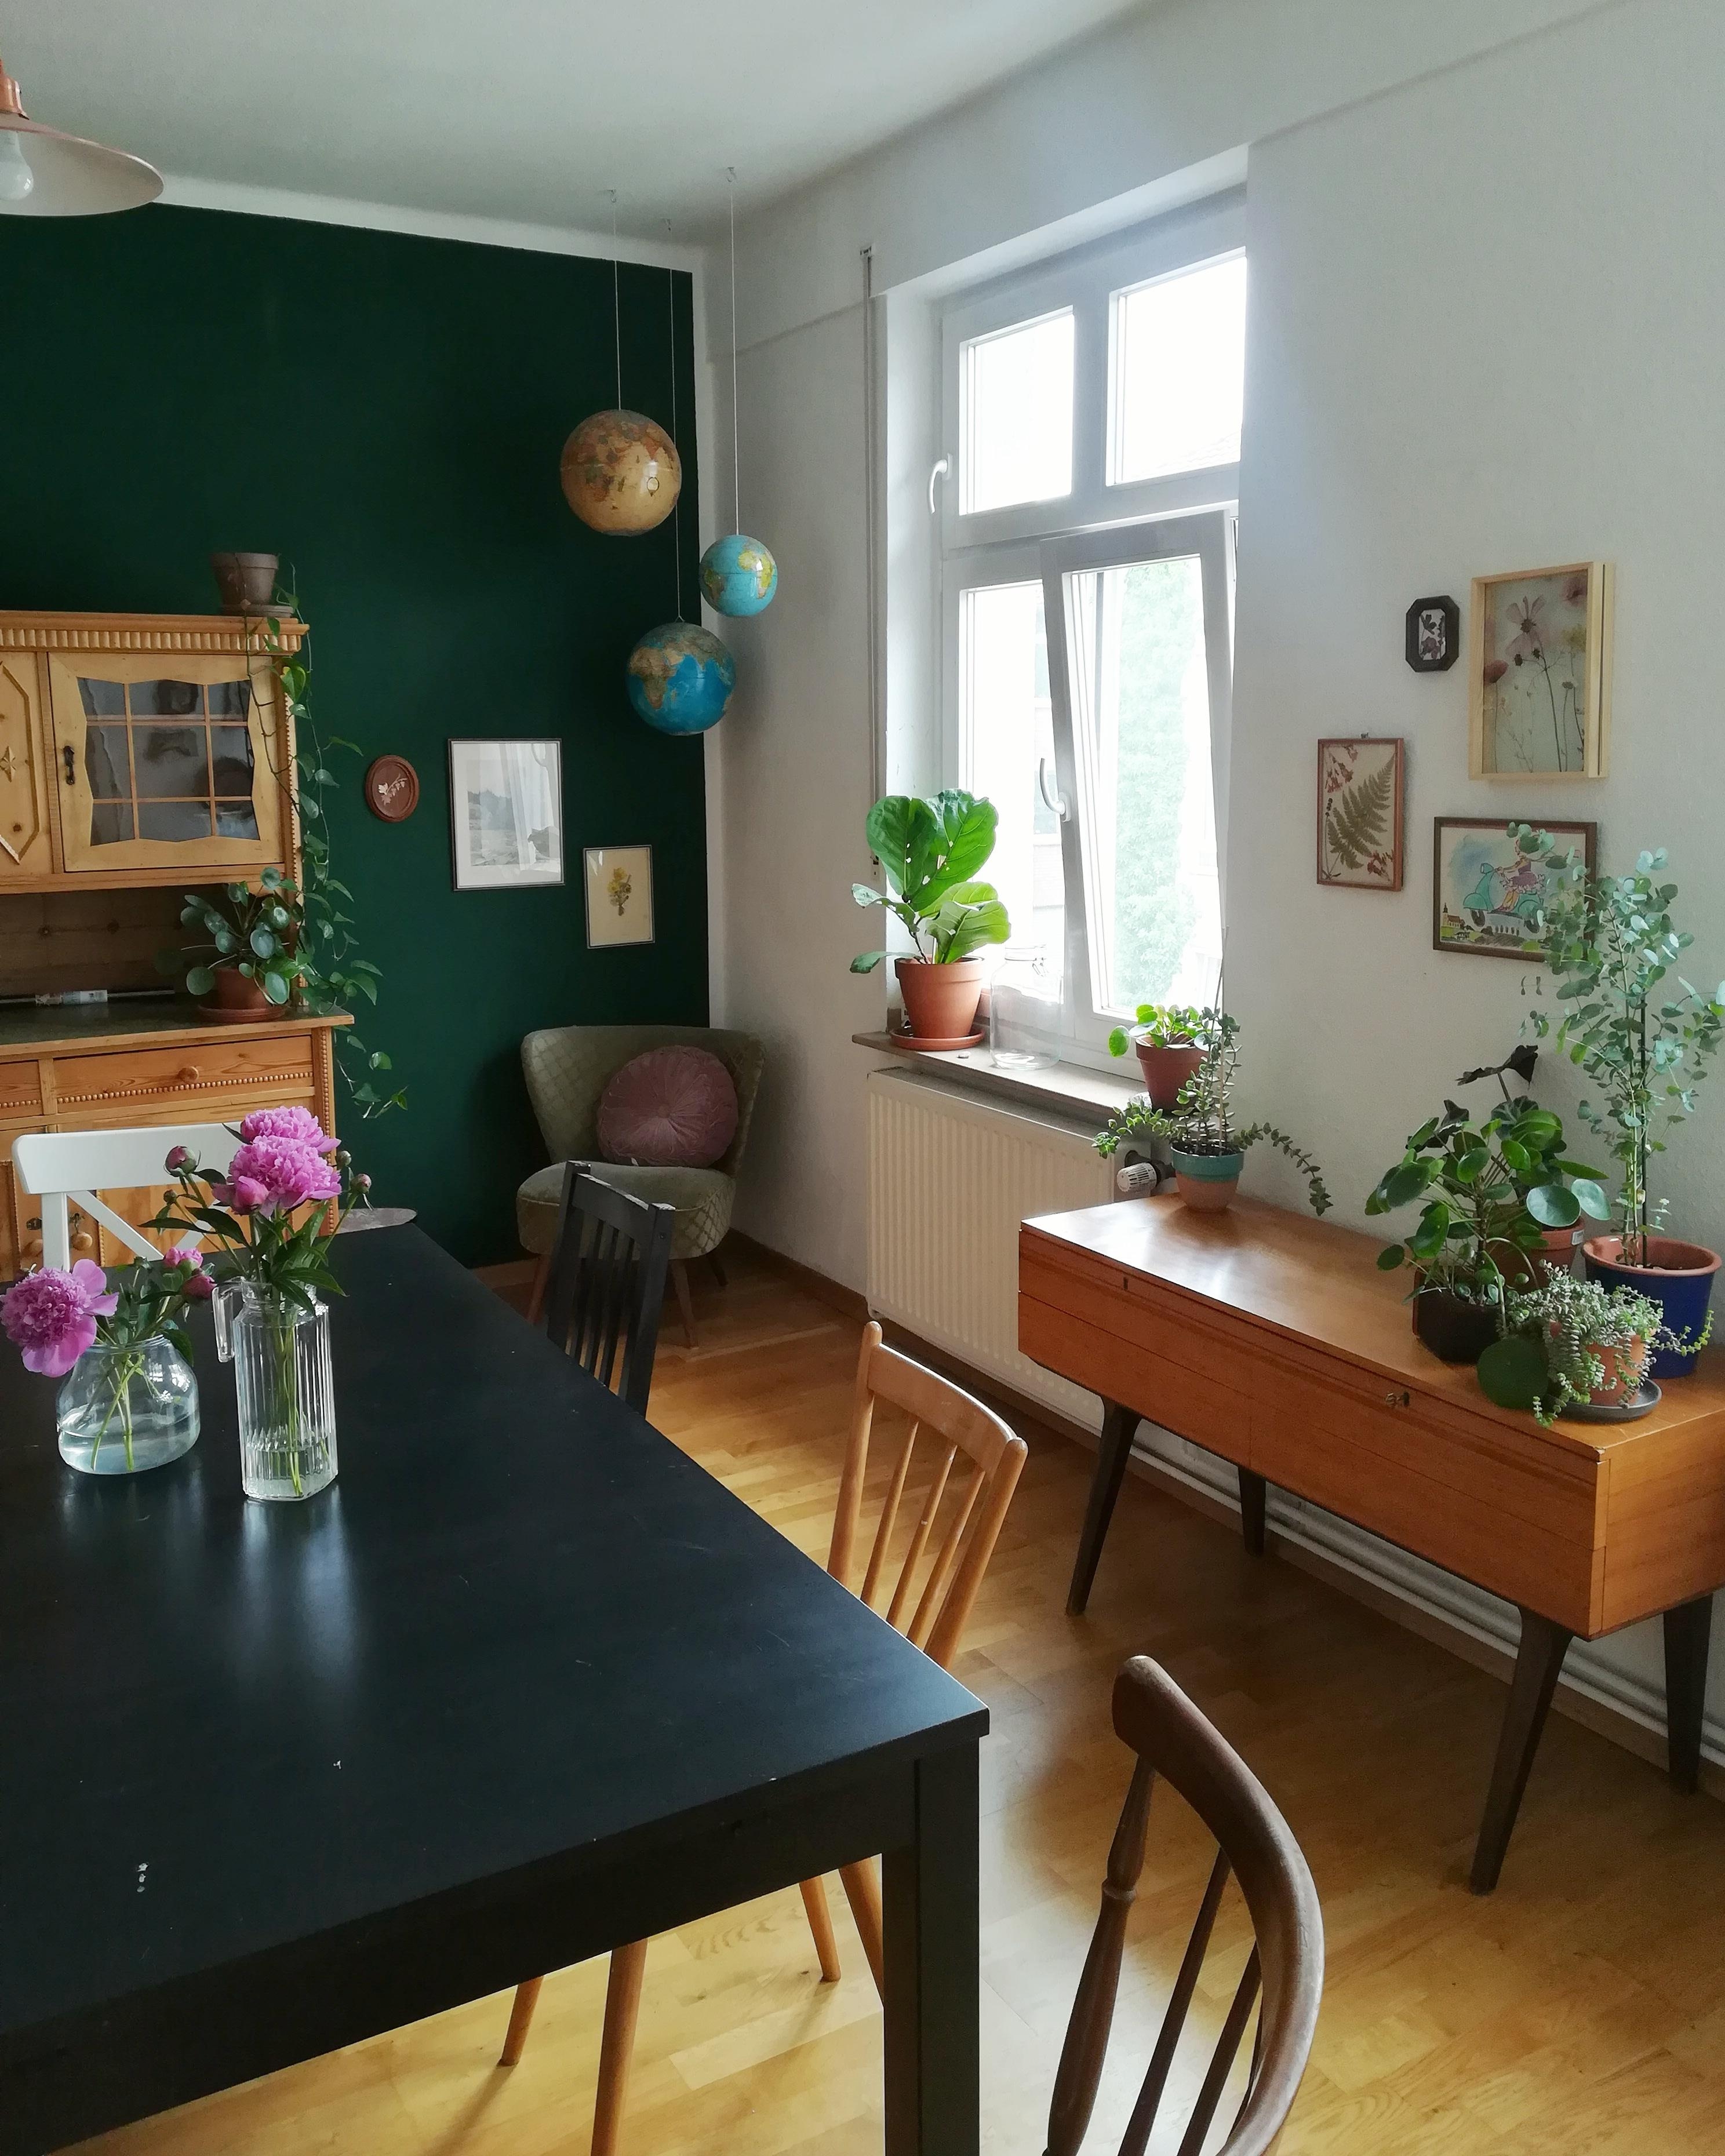 #wohnzimmer #esszimmer #altbau #grün #diy #doityourself #wohninspiration #meinzuhause #inspo #interior #wohnungsliebe 